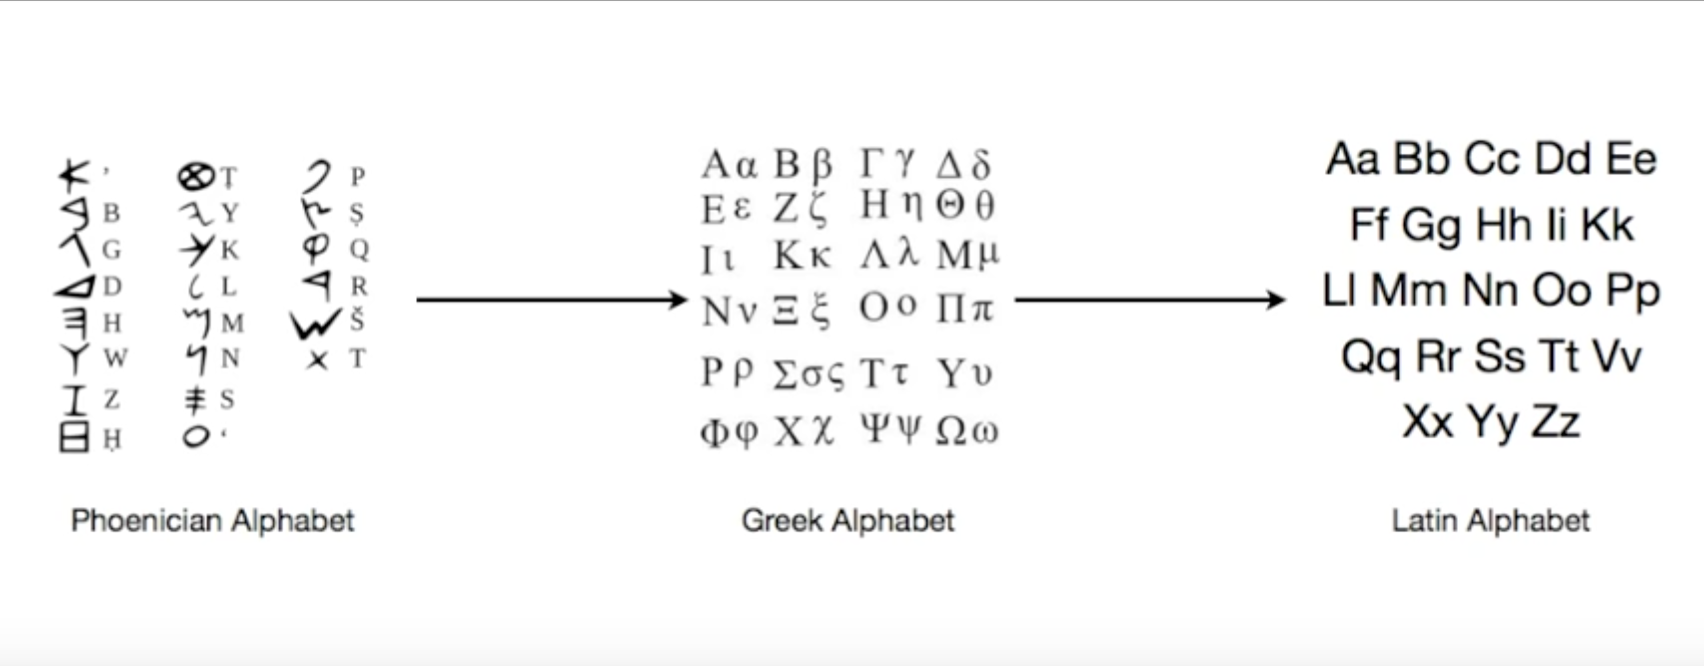 腓尼基字母的演化图片